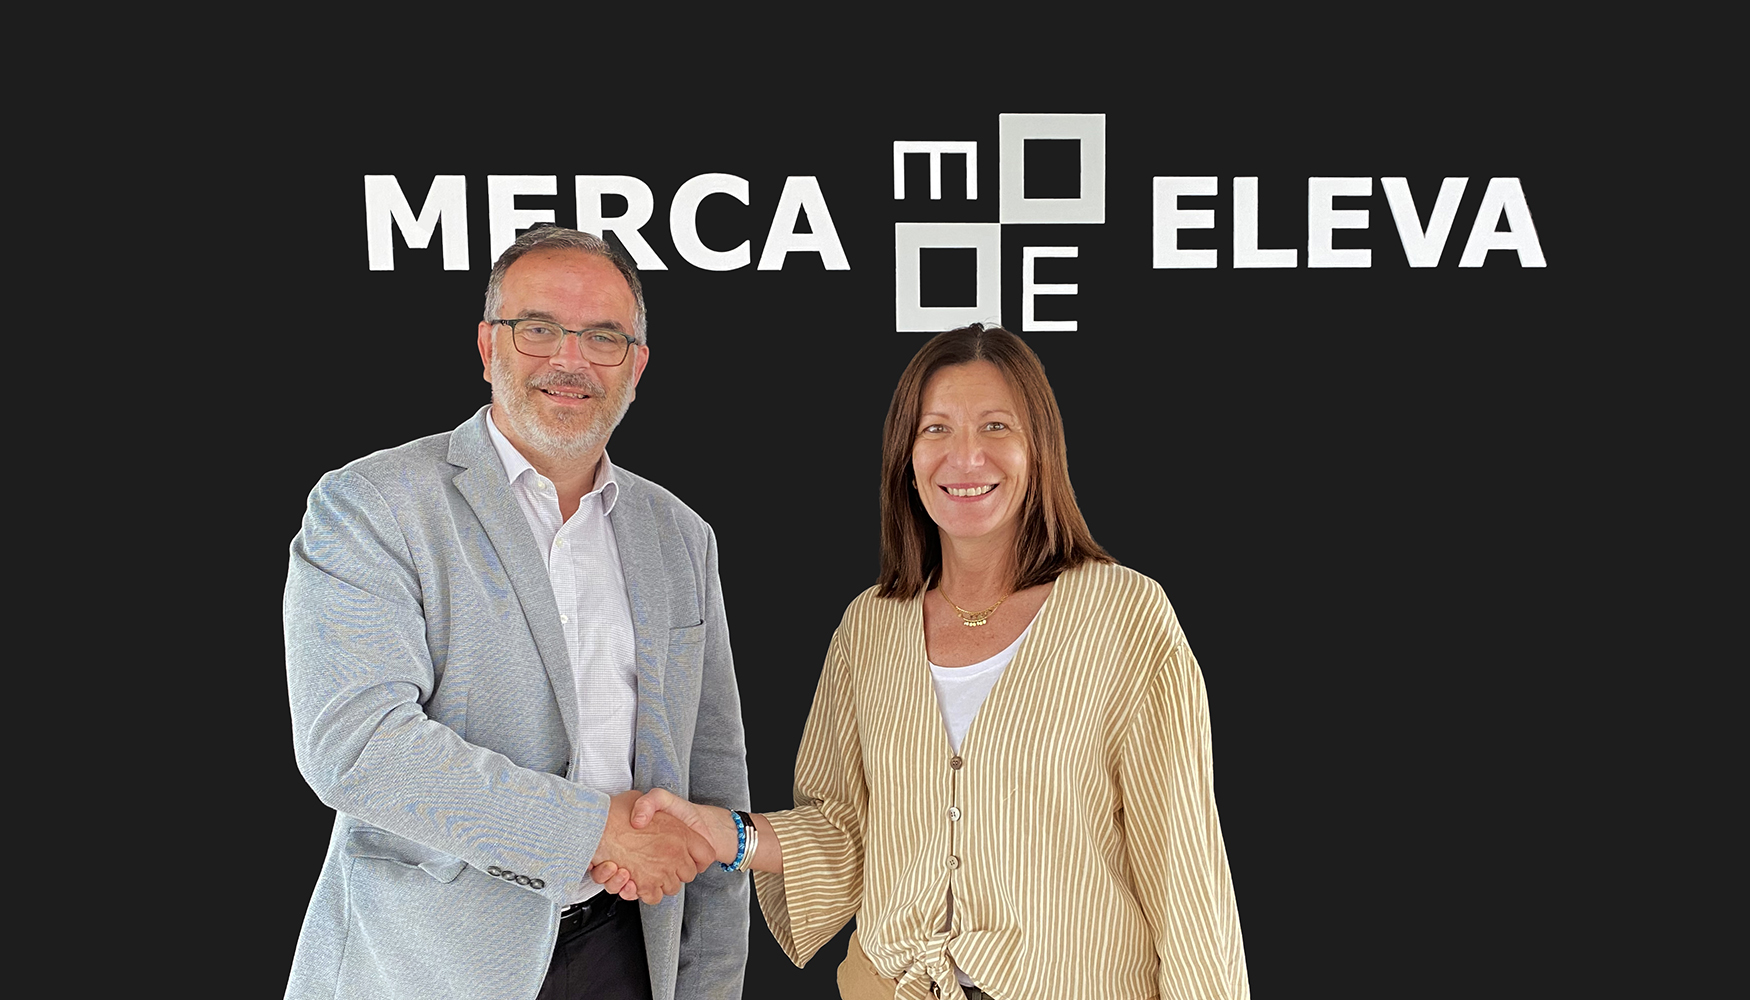 De izquierda a derecha: Jordi Varela, CEO de Mercaeleva, y Marta Terraza, nueva directora comercial y de marketing de Mercaeleva...